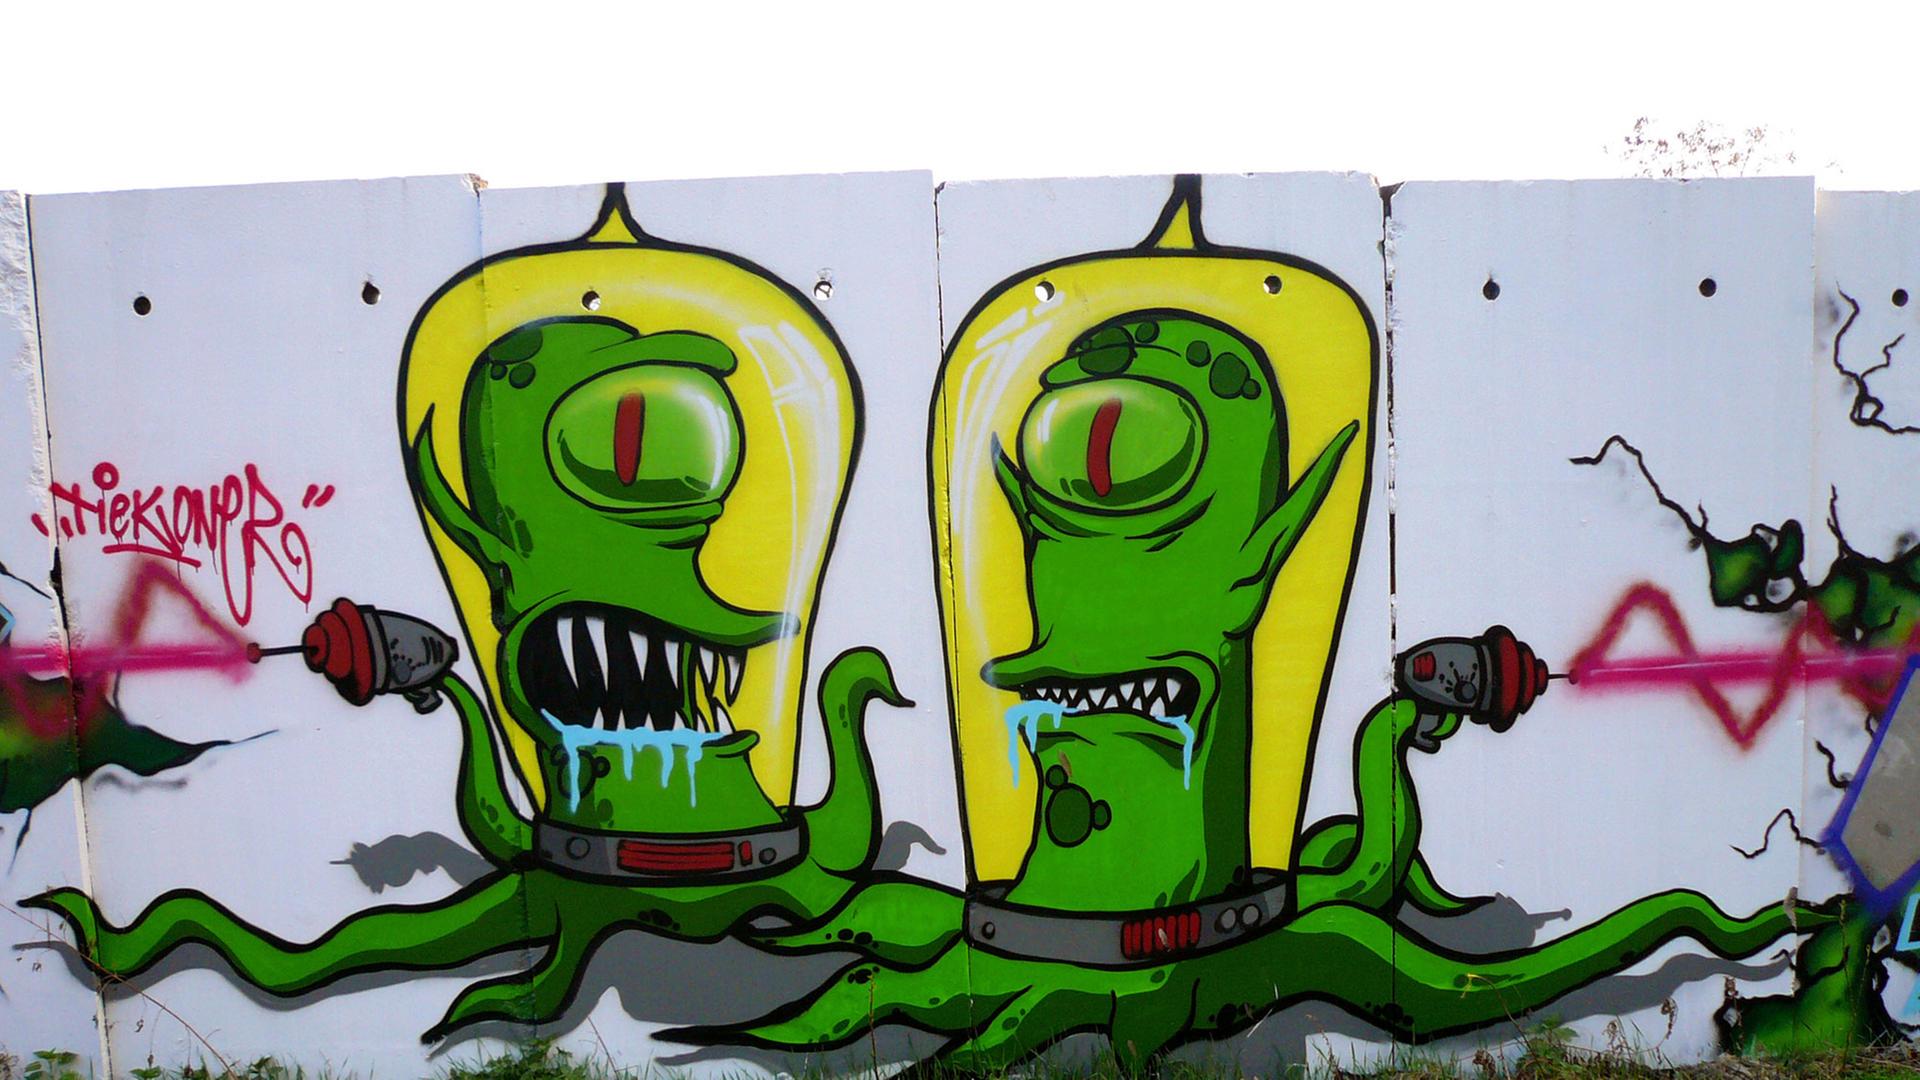 Zwei Außerirdische aus der Comic-Fernsehserie "Die Simpsons" an Mauersegmenten in Berlin